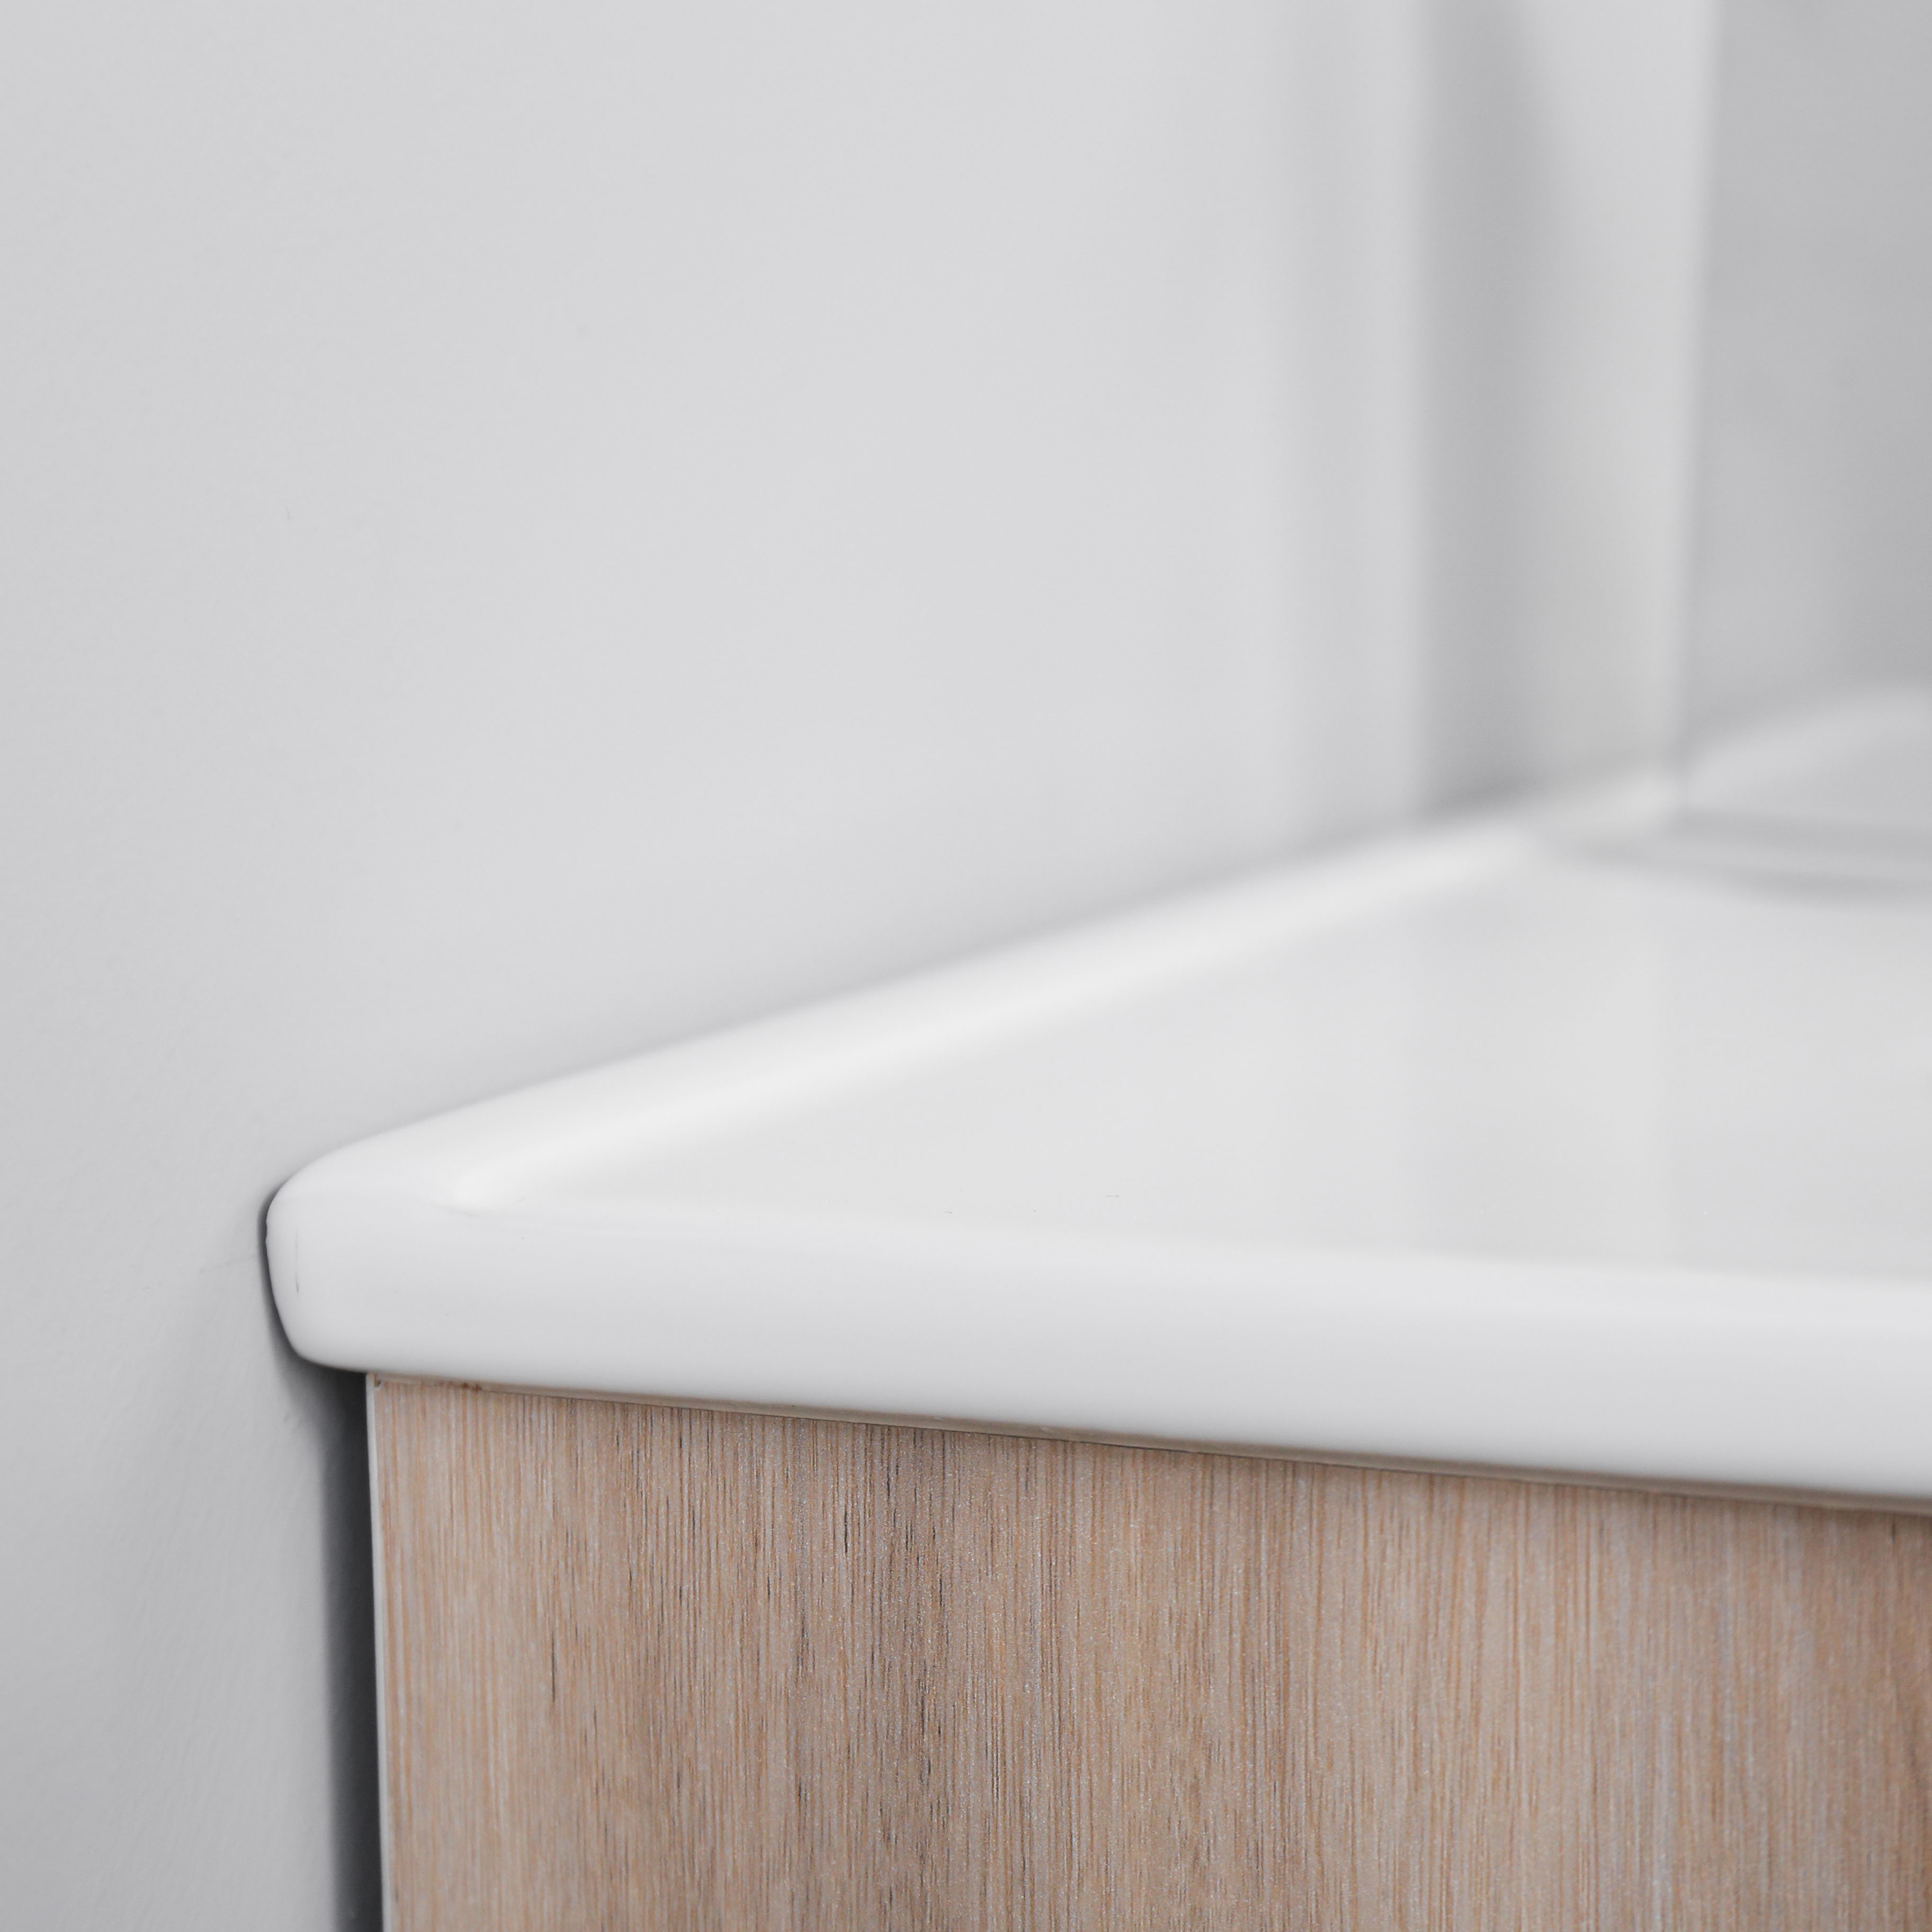 Прямоугольная раковина с перьями и тонкими краями, белая керамическая раковина для ванной комнаты